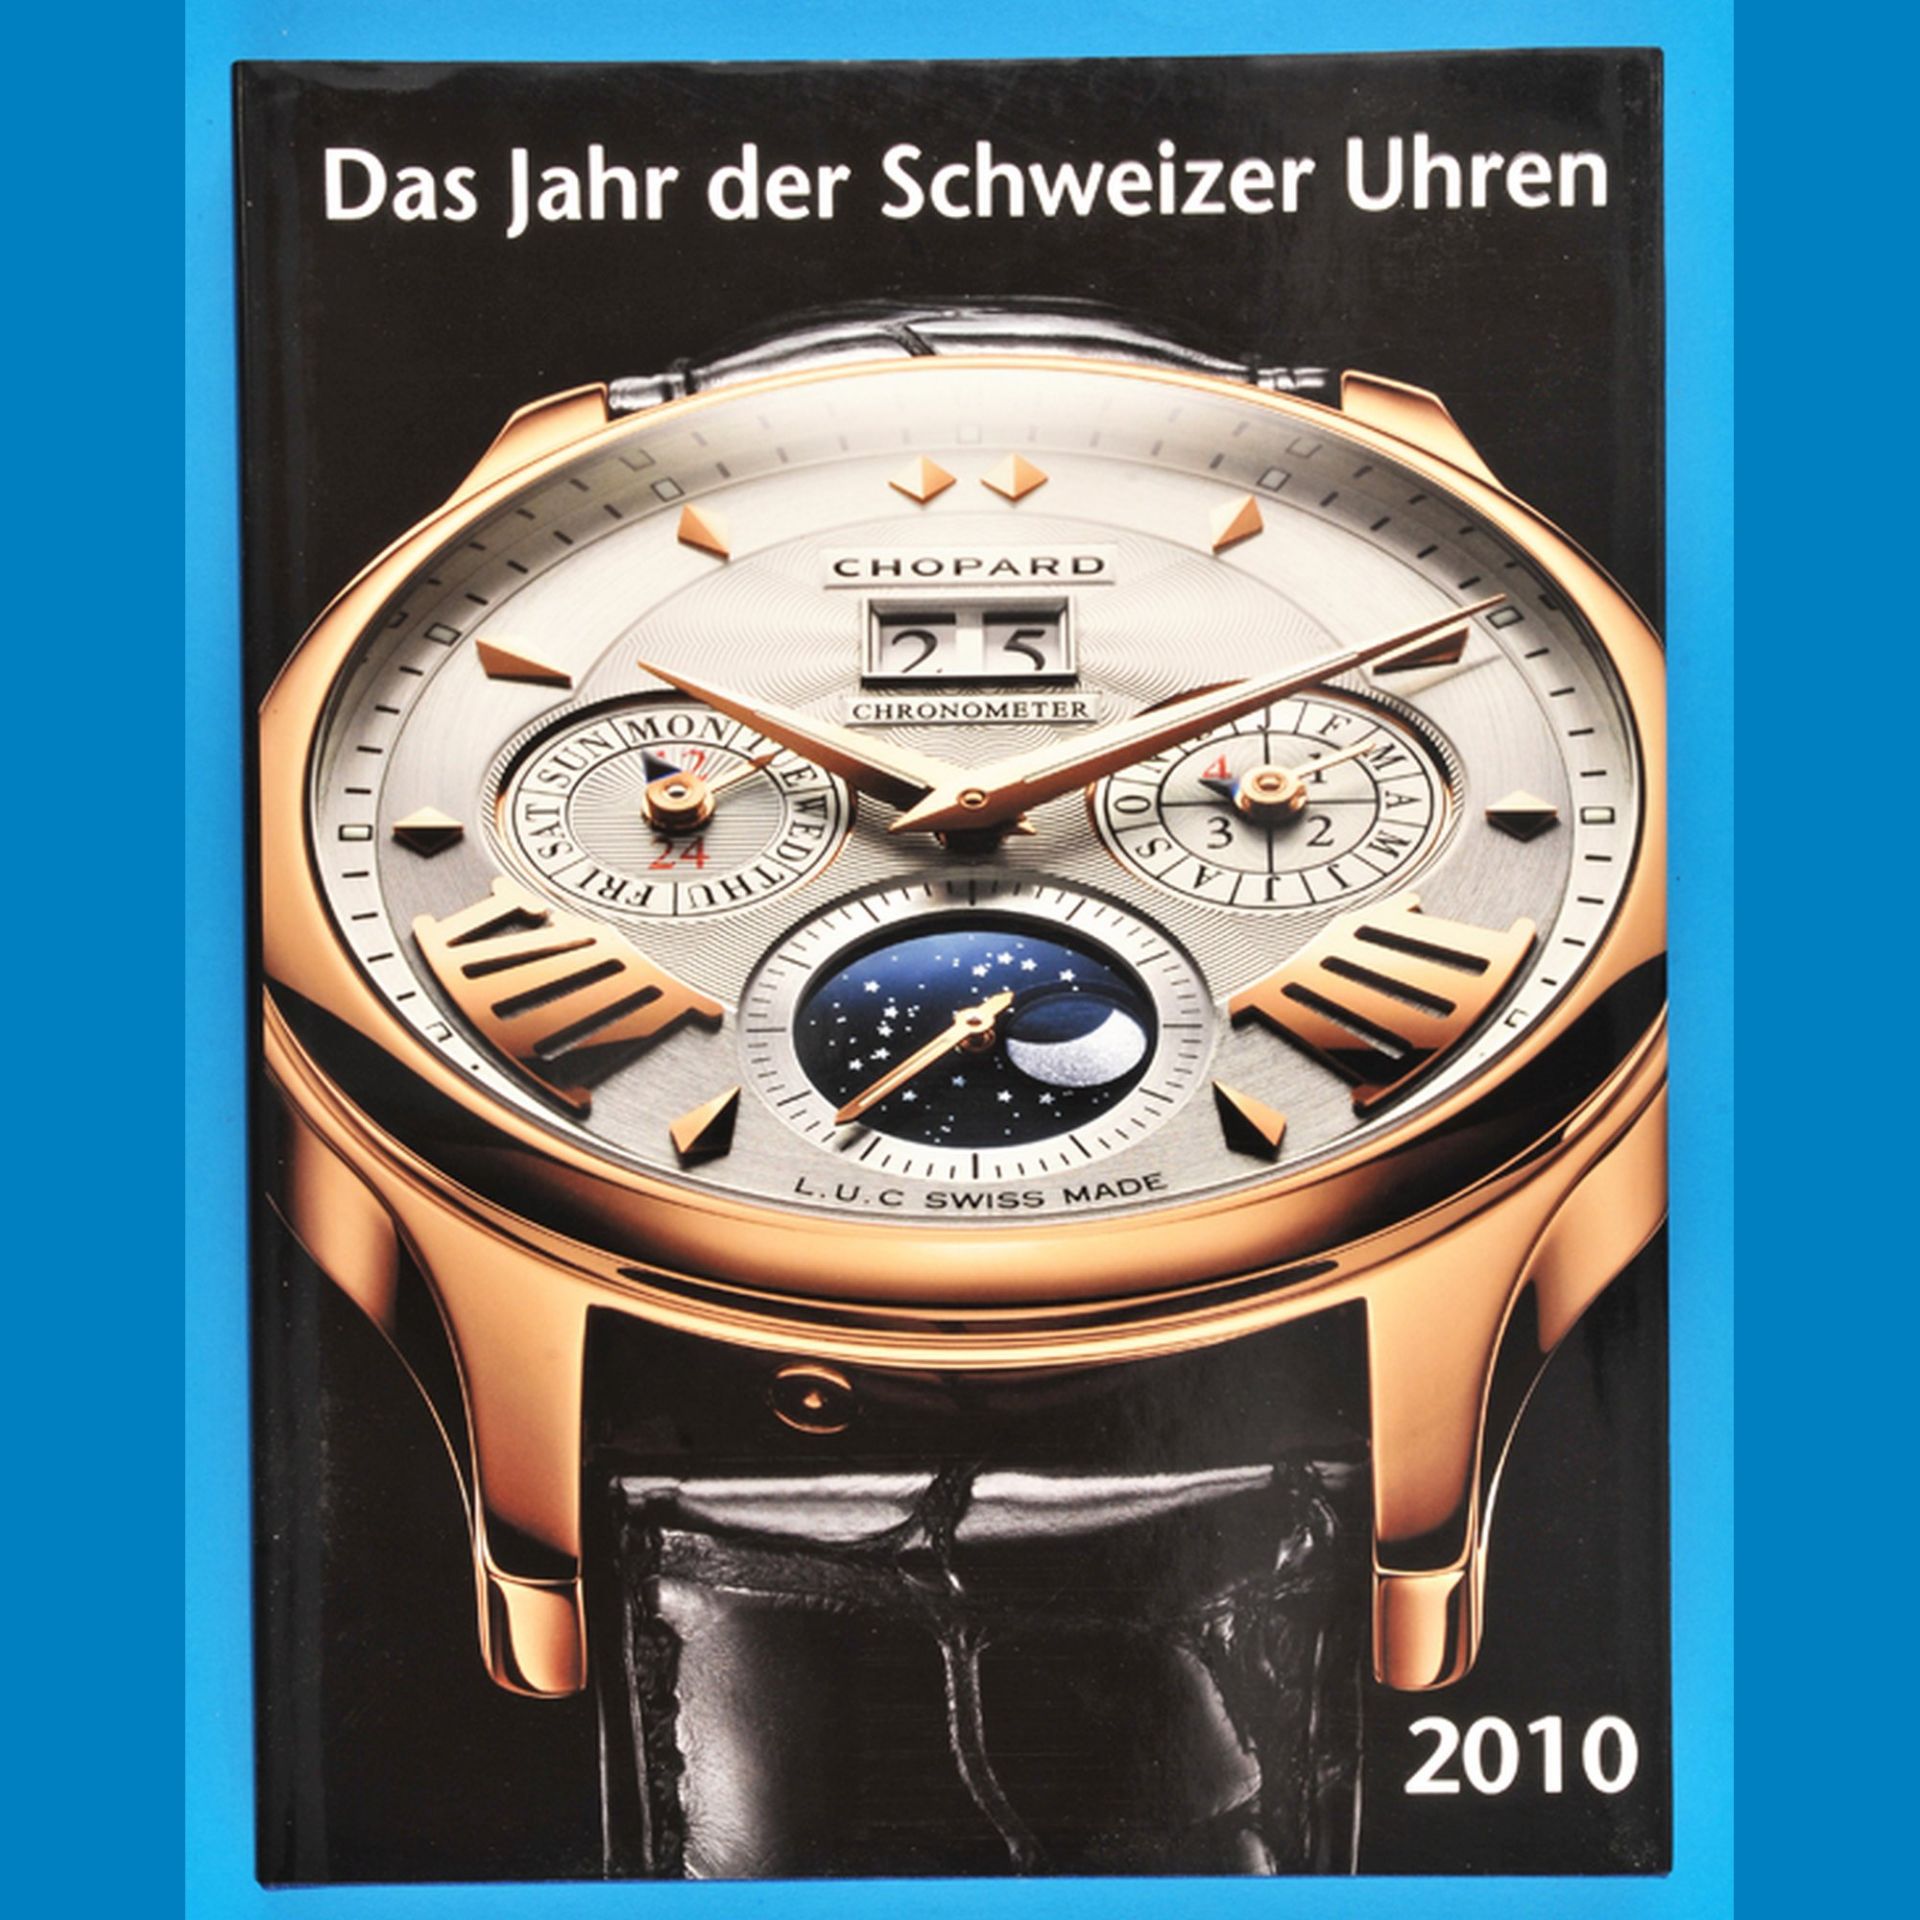 Das Jahr der Schweizer Uhren, 2010